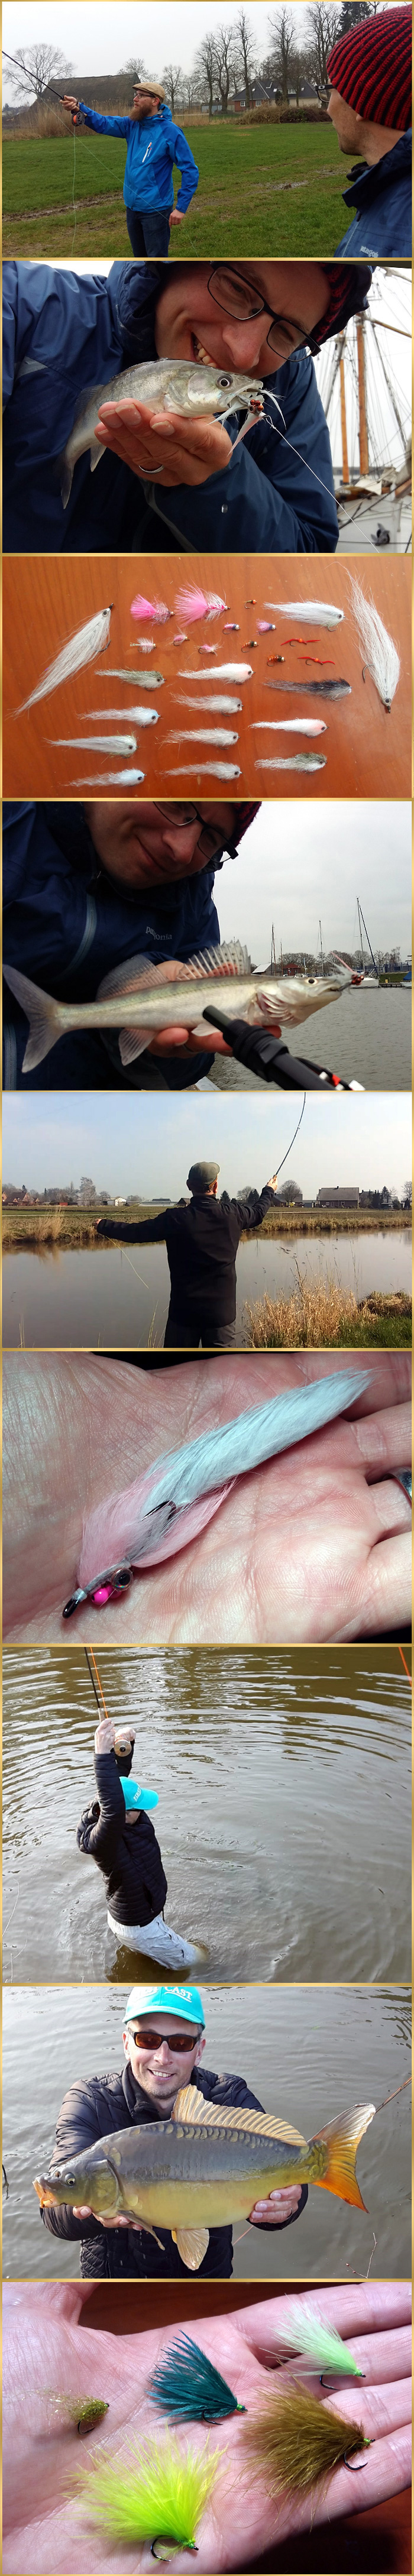 bernd-ziesche-fly-fishing-first-cast